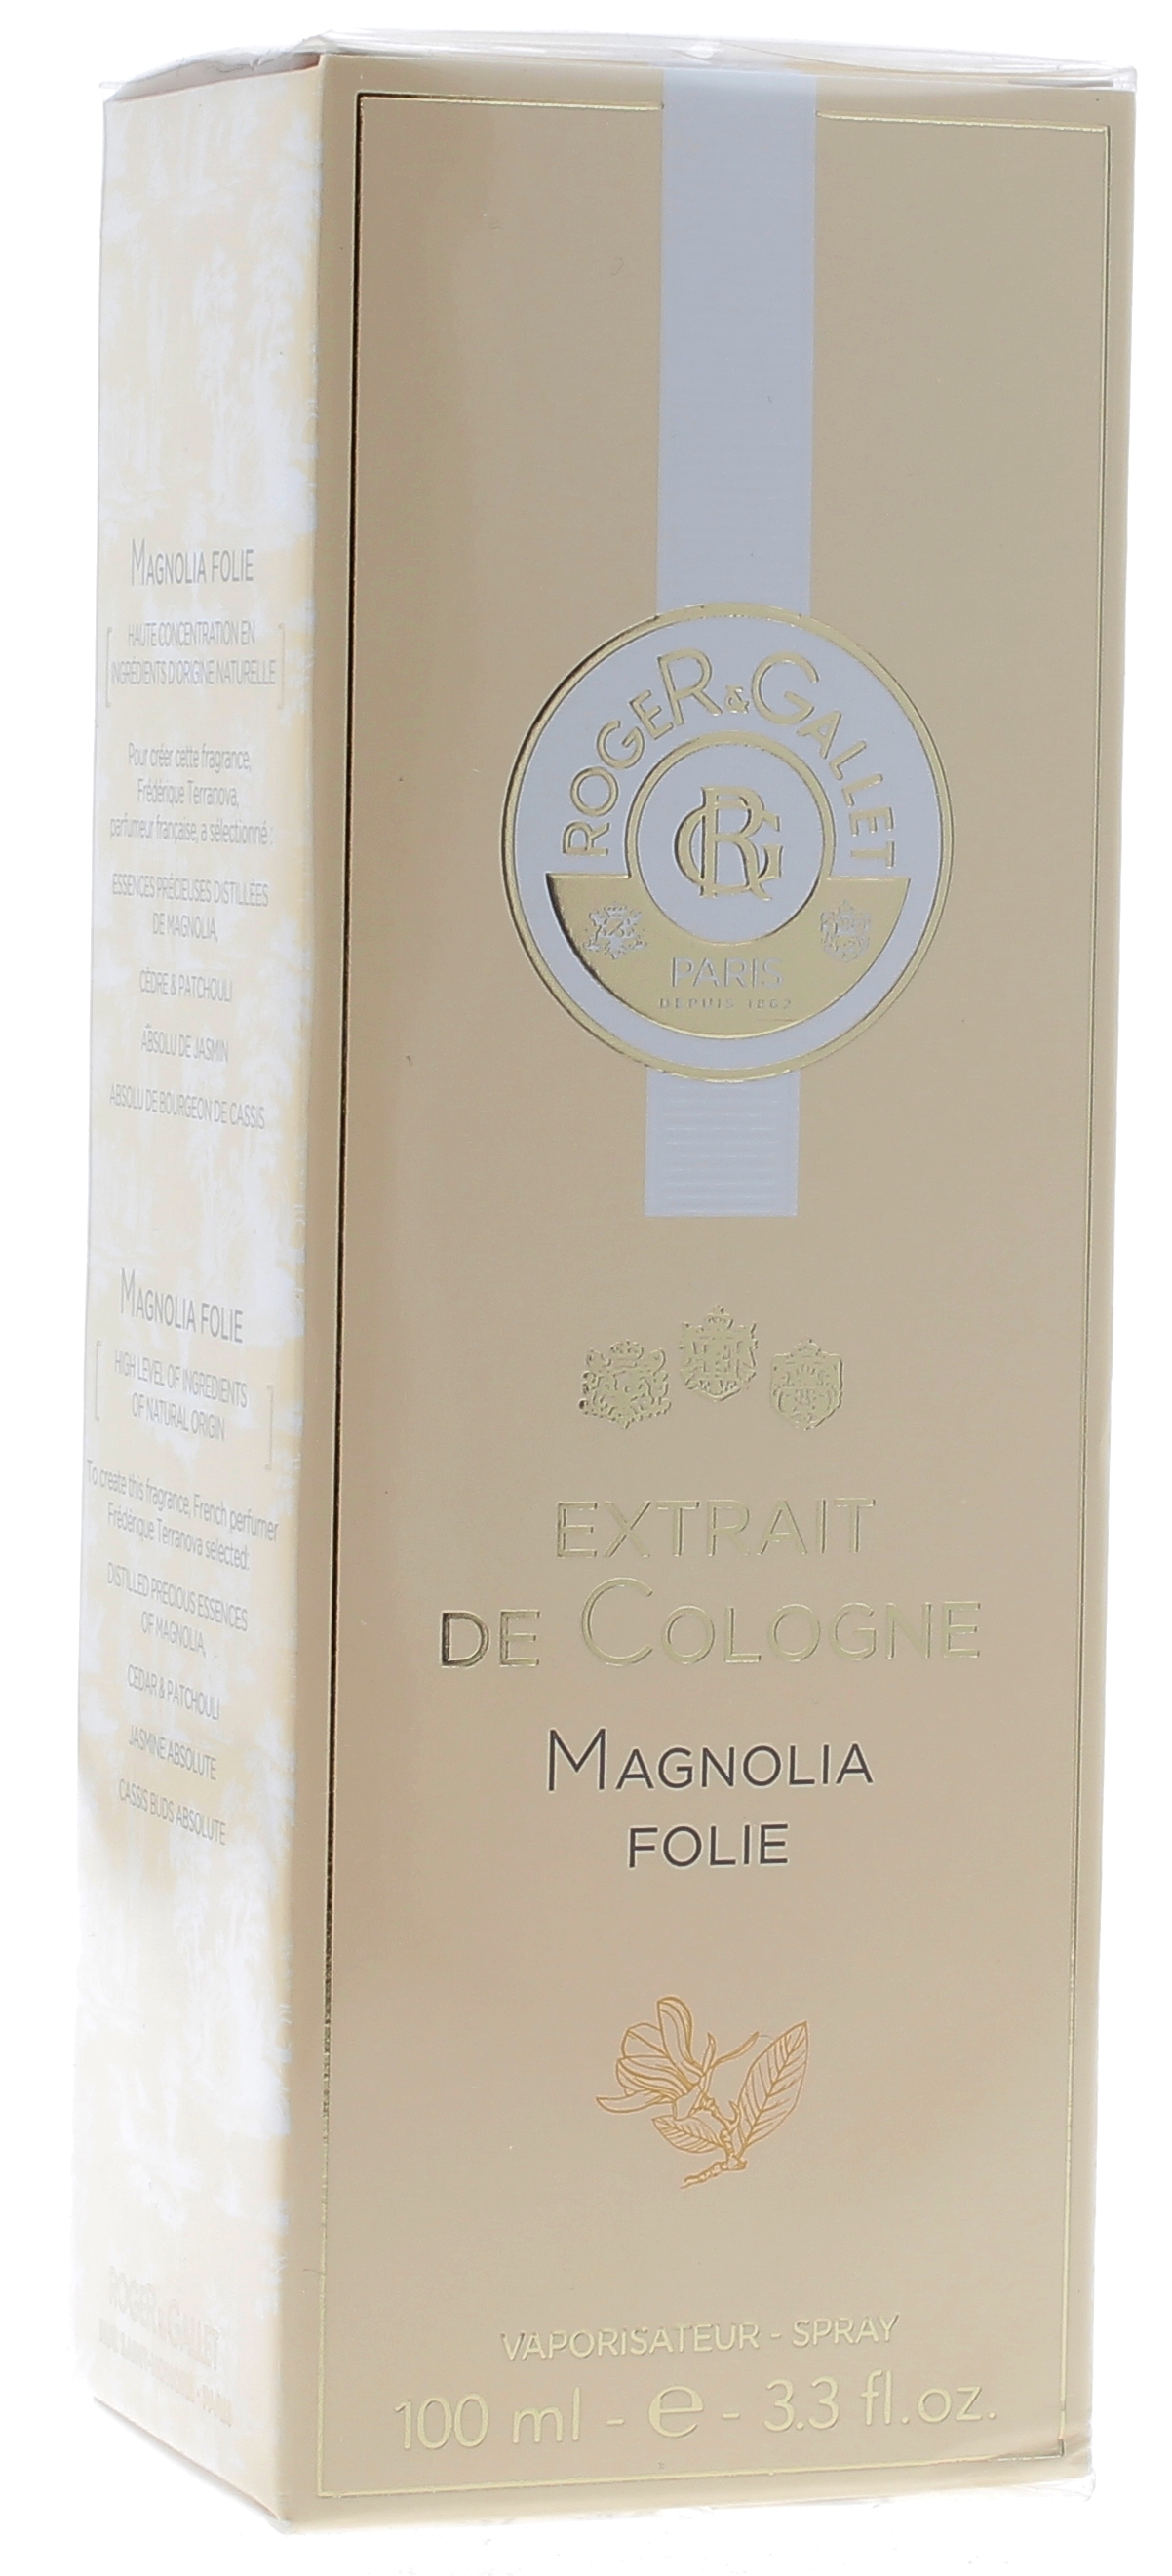 Extrait de Cologne Magnolia Folie Roger & Gallet - flacon de 100 ml